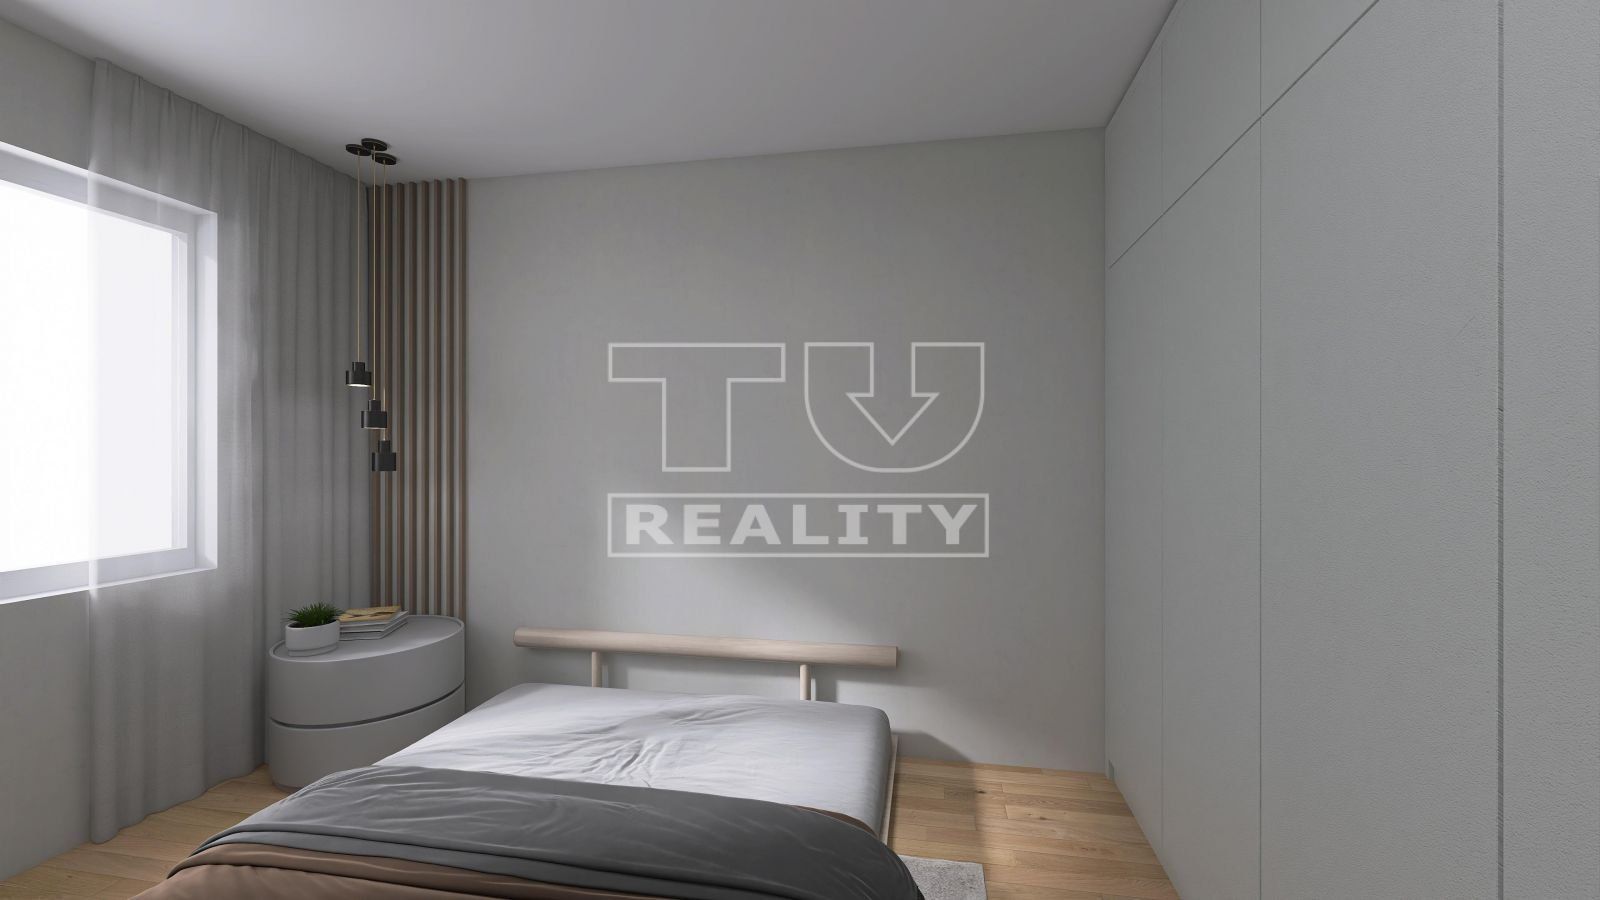 TUreality ponúka na predaj - priestranný 3izbový byt v Lehniciach,69m2